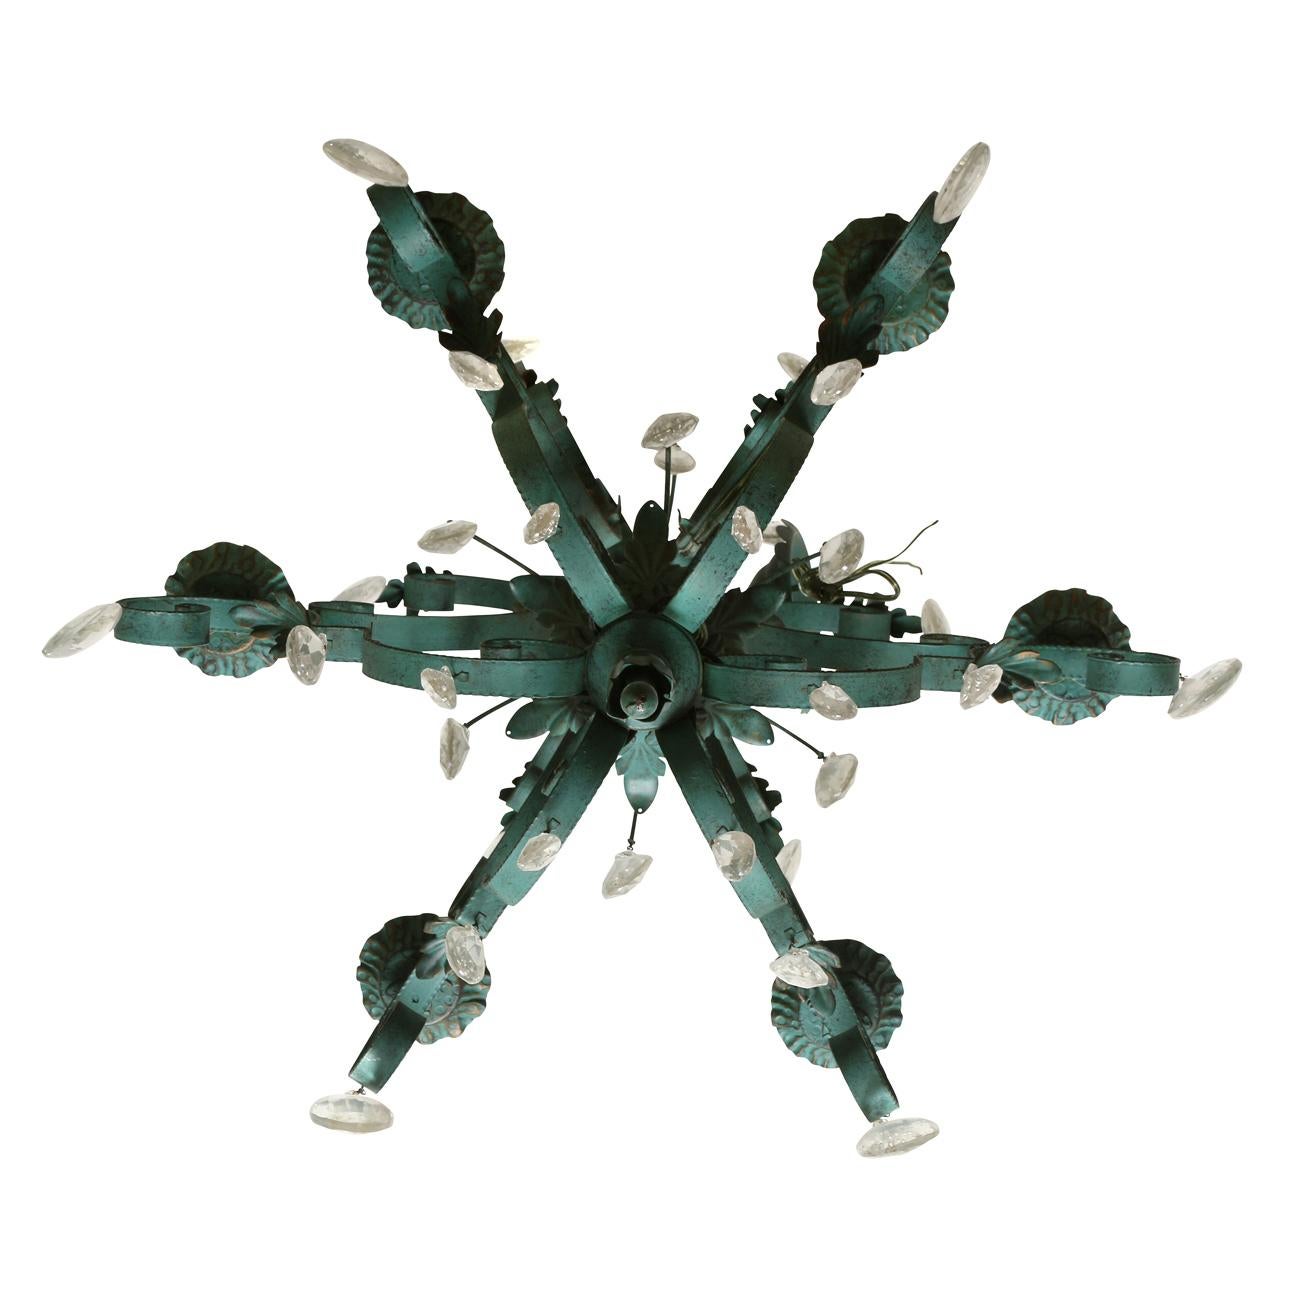 Ein sechsarmiger Kronleuchter aus grün lackiertem Metall und Zinn, mit gerollten Armen, Akanthusblatt-Details und hängenden Kristallen auf mehreren Etagen.